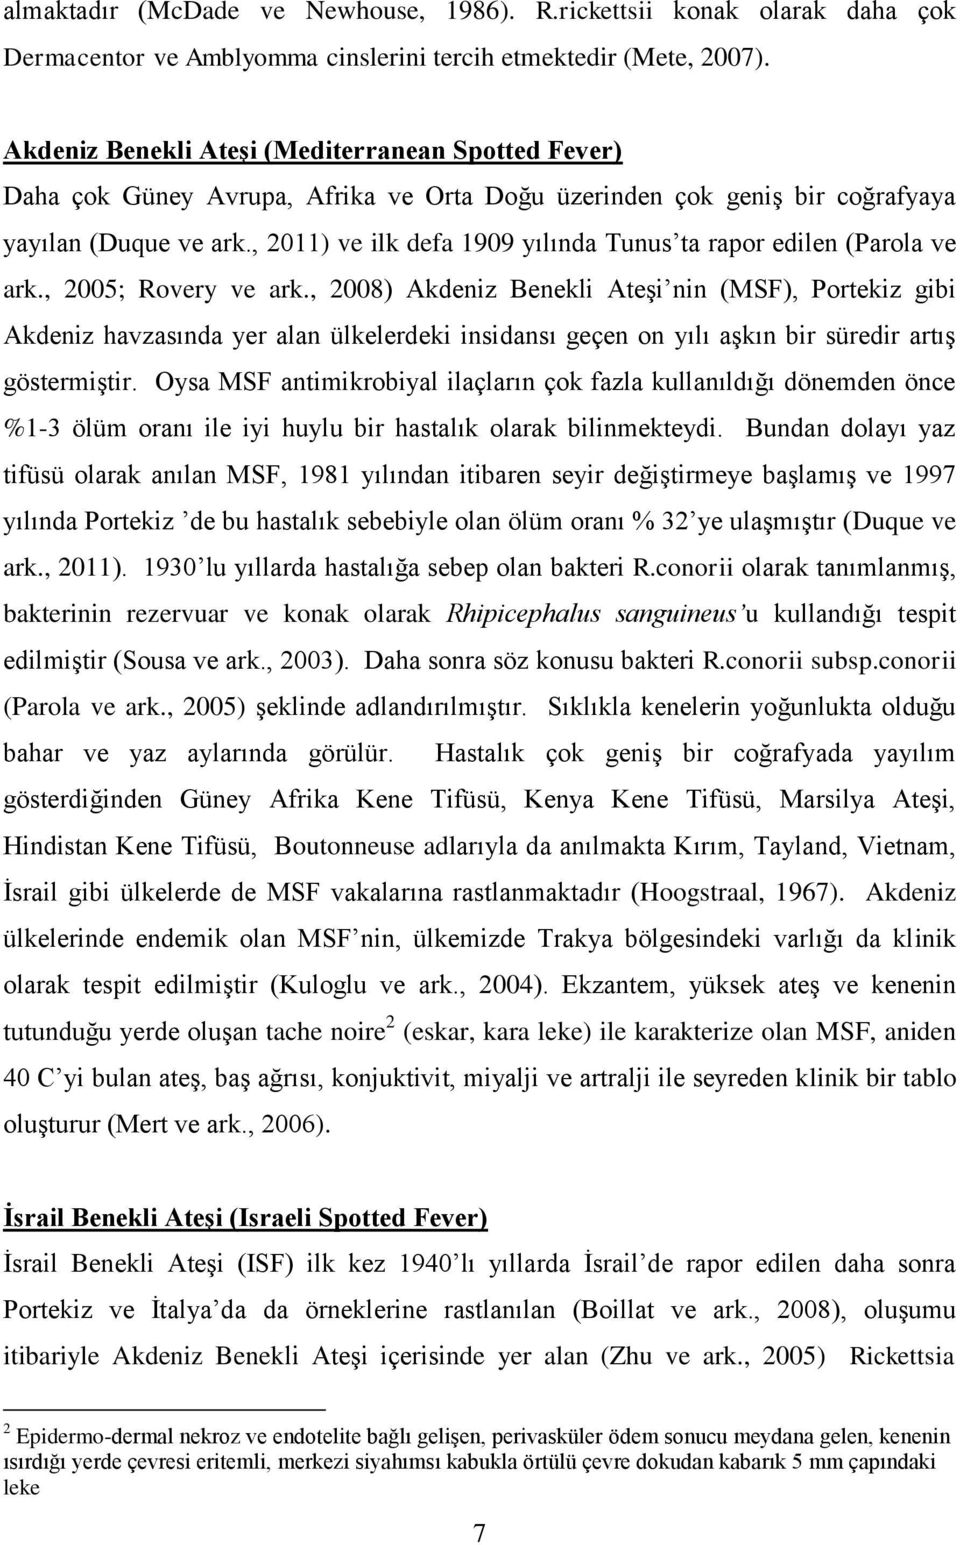 , 2011) ve ilk defa 1909 yılında Tunus ta rapor edilen (Parola ve ark., 2005; Rovery ve ark.